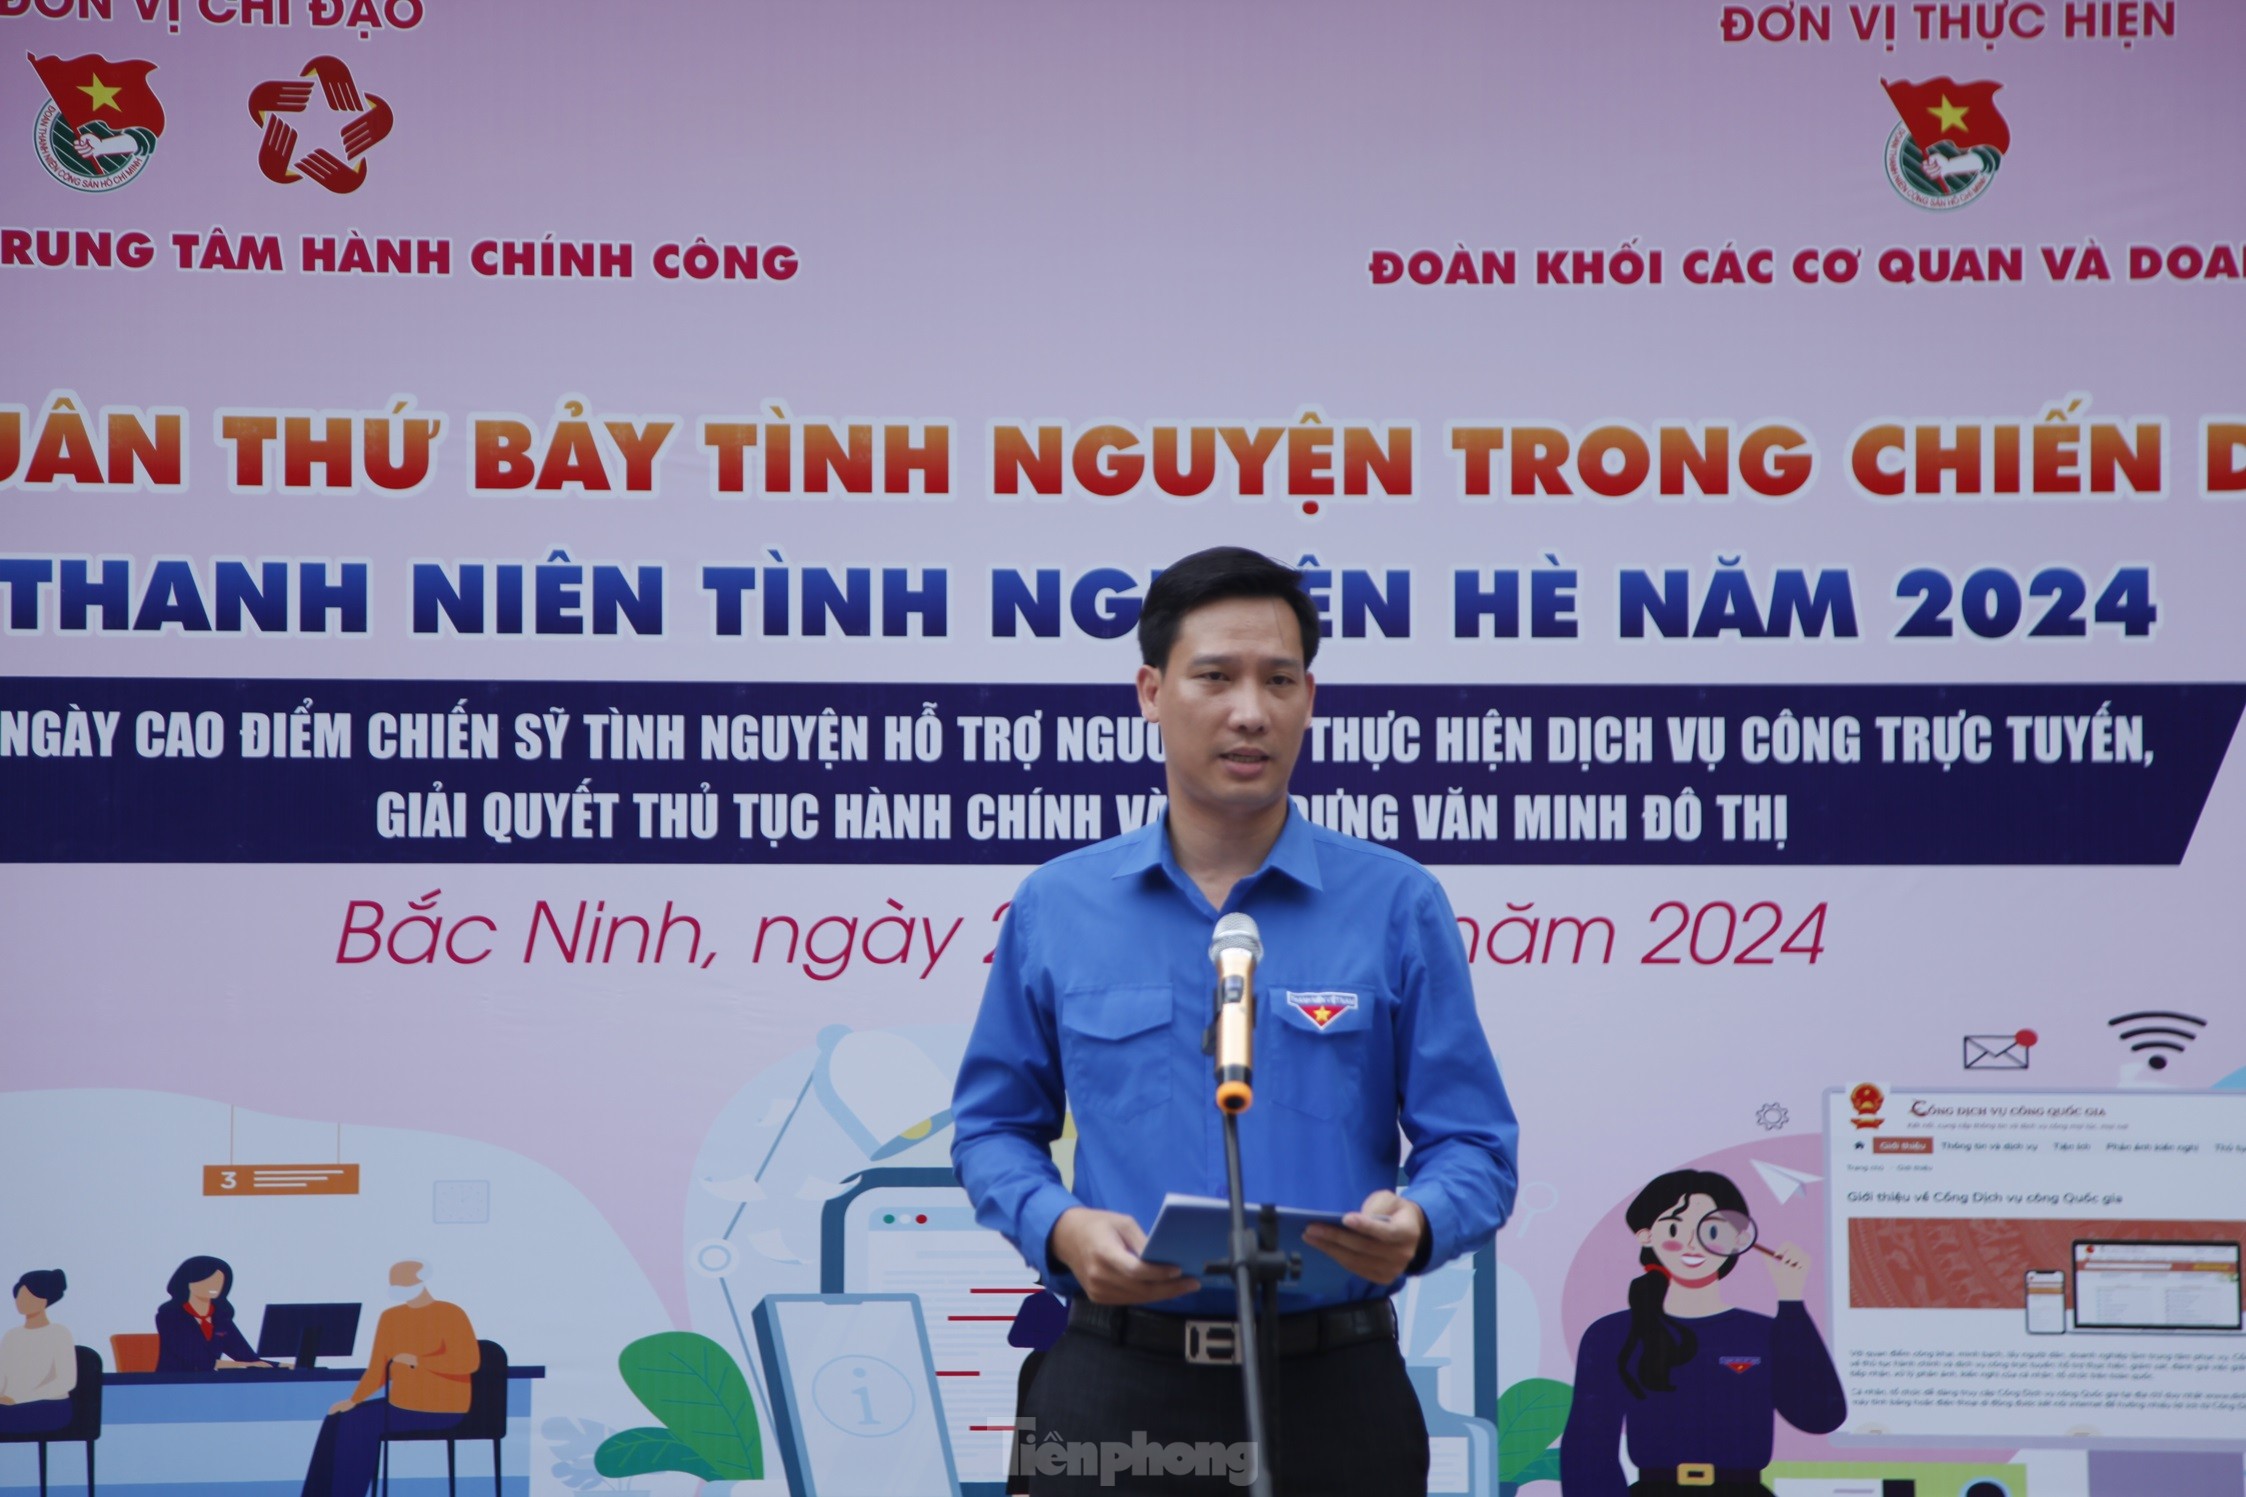 Tuổi trẻ Bắc Ninh hỗ trợ người dân giải quyết thủ tục hành chính